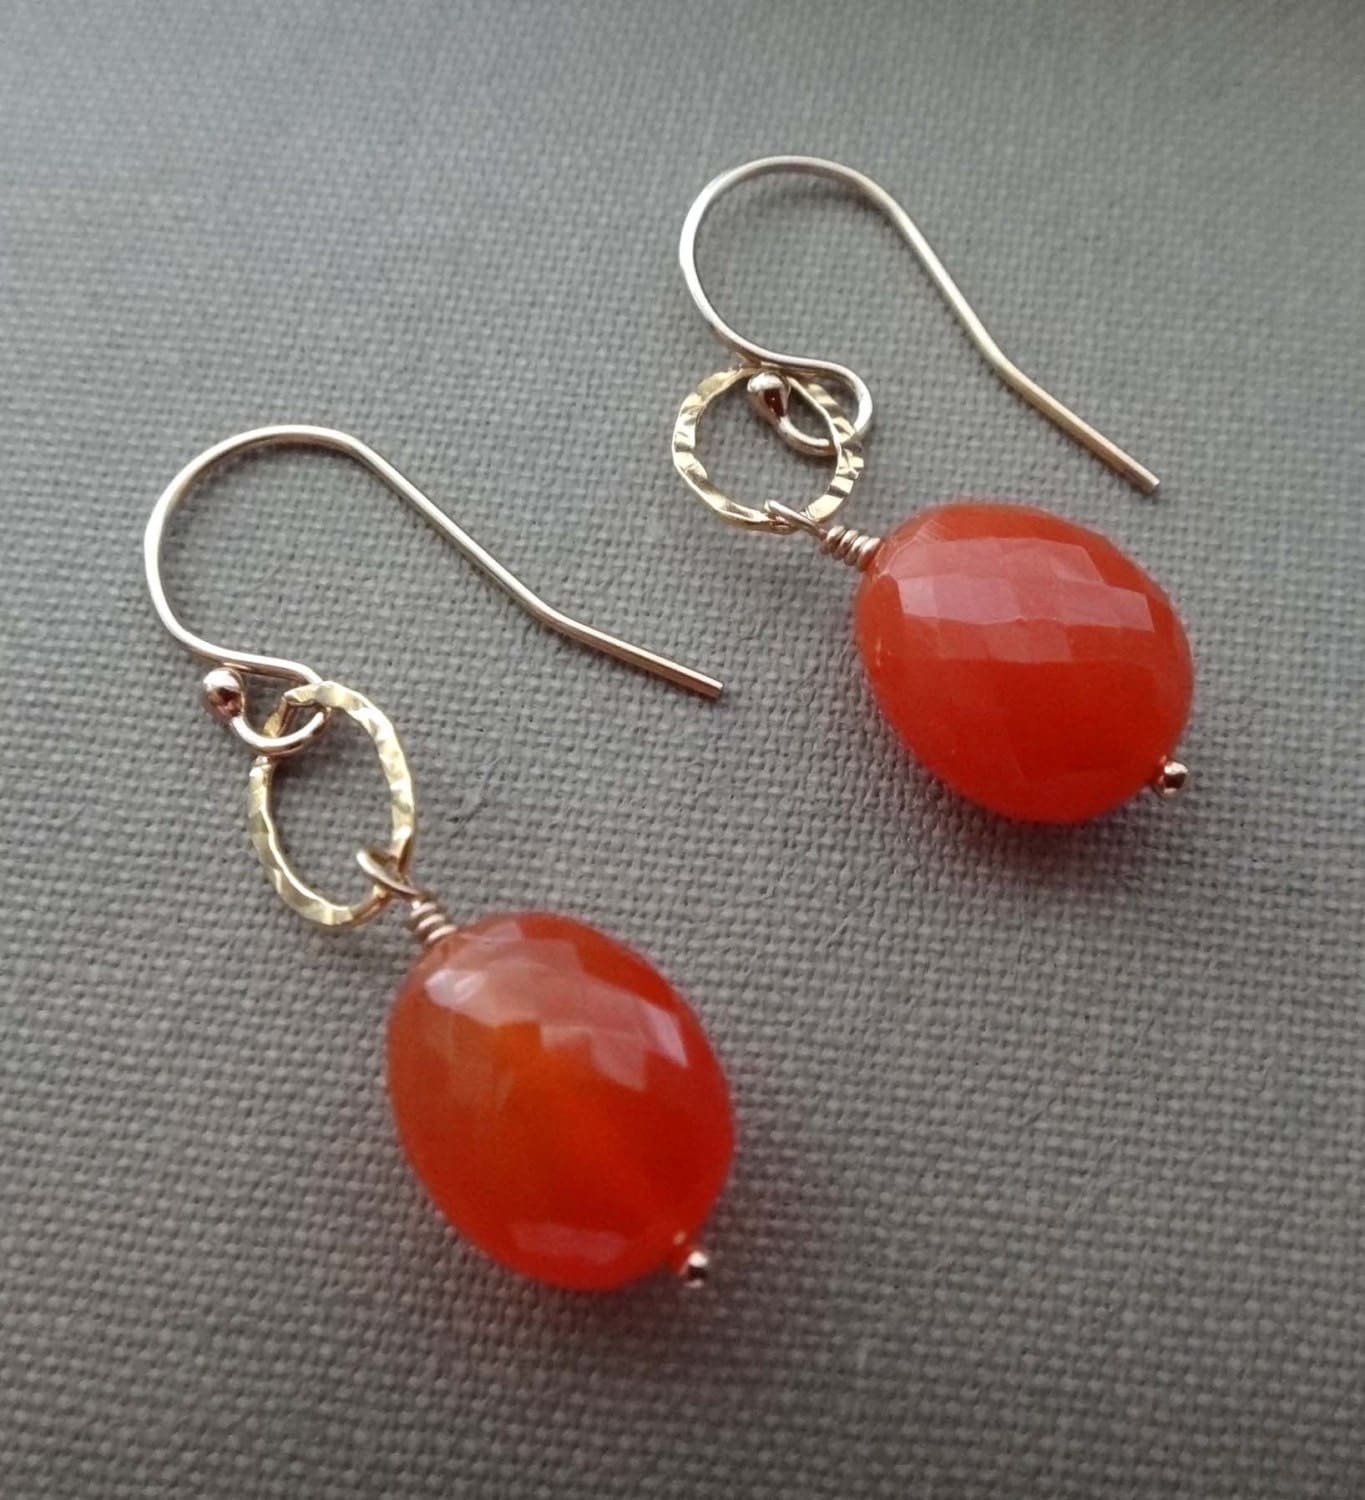 Gemstone earrings orange gemstone earrings by WahineJewelrybyKaren